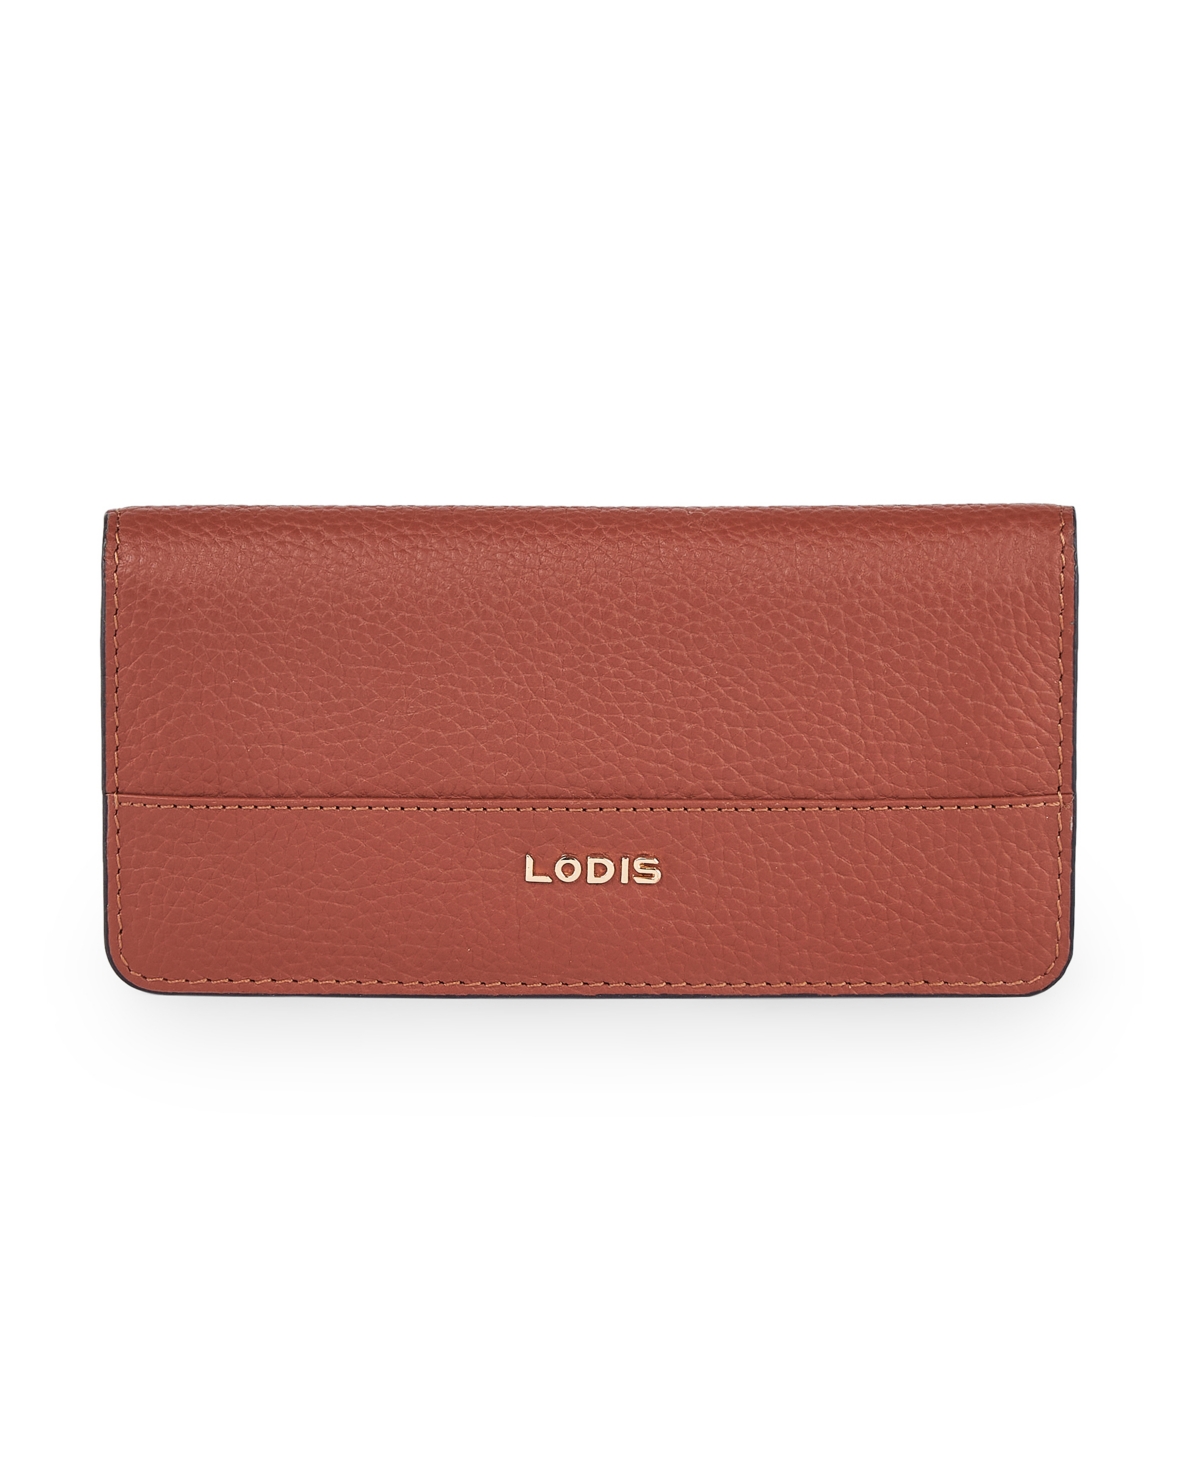 Lodis Women's Iris Long Bifold Wallet In Chestnut,black